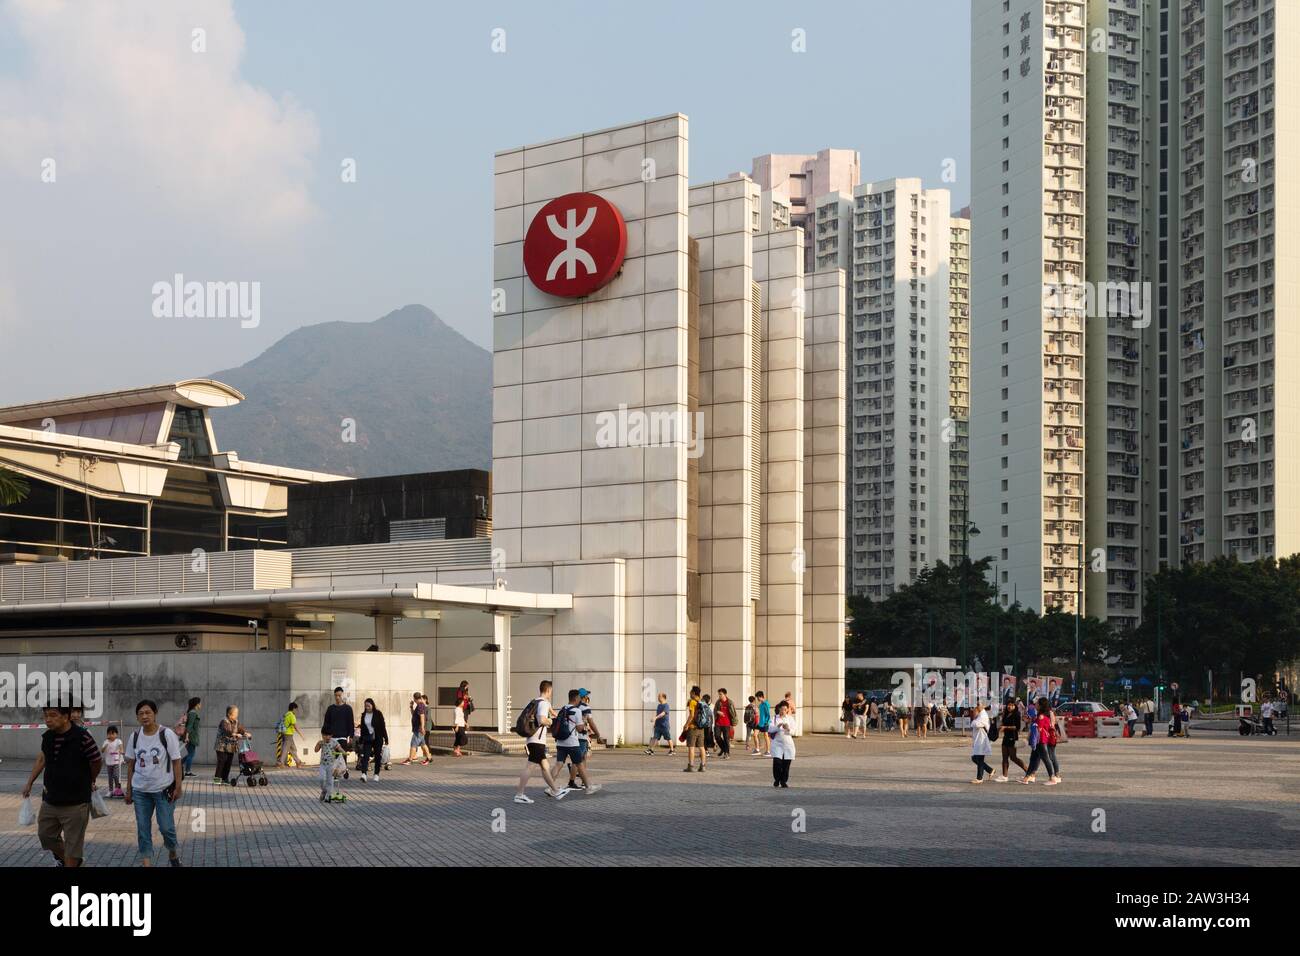 Gare MTR Tung Chung, qui fait partie du réseau ferroviaire de transport en commun, Tung Chung, île Lantau Hong Kong Asie Banque D'Images